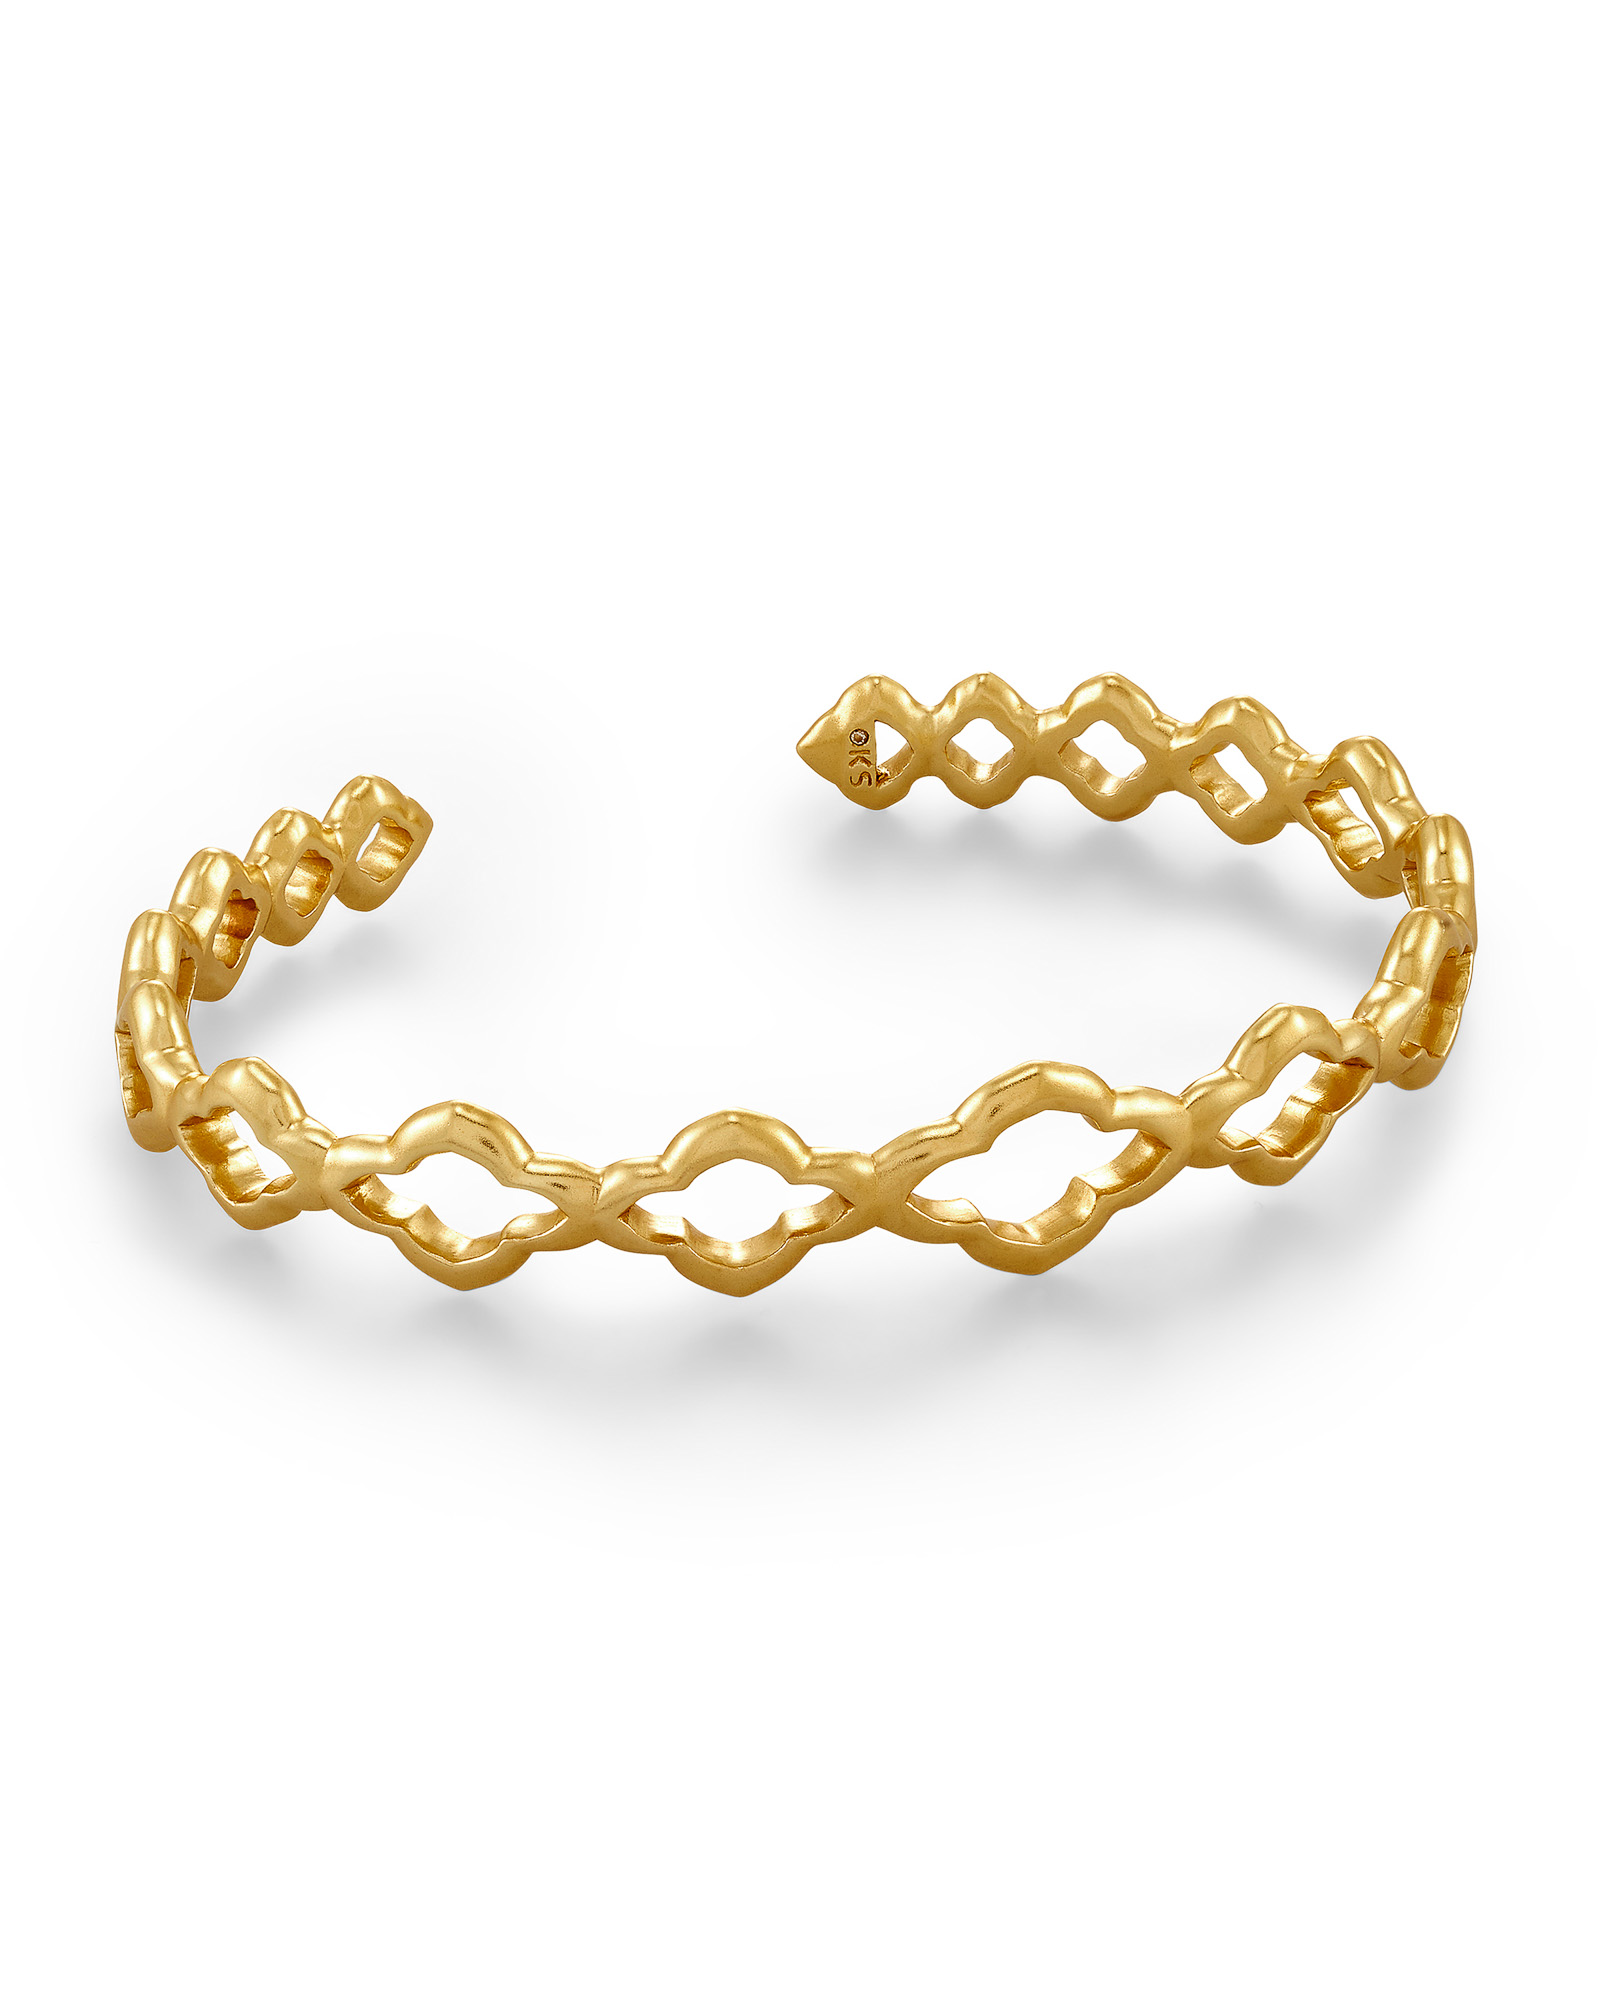 Abbie Cuff Bracelet in Vintage Gold | Kendra Scott